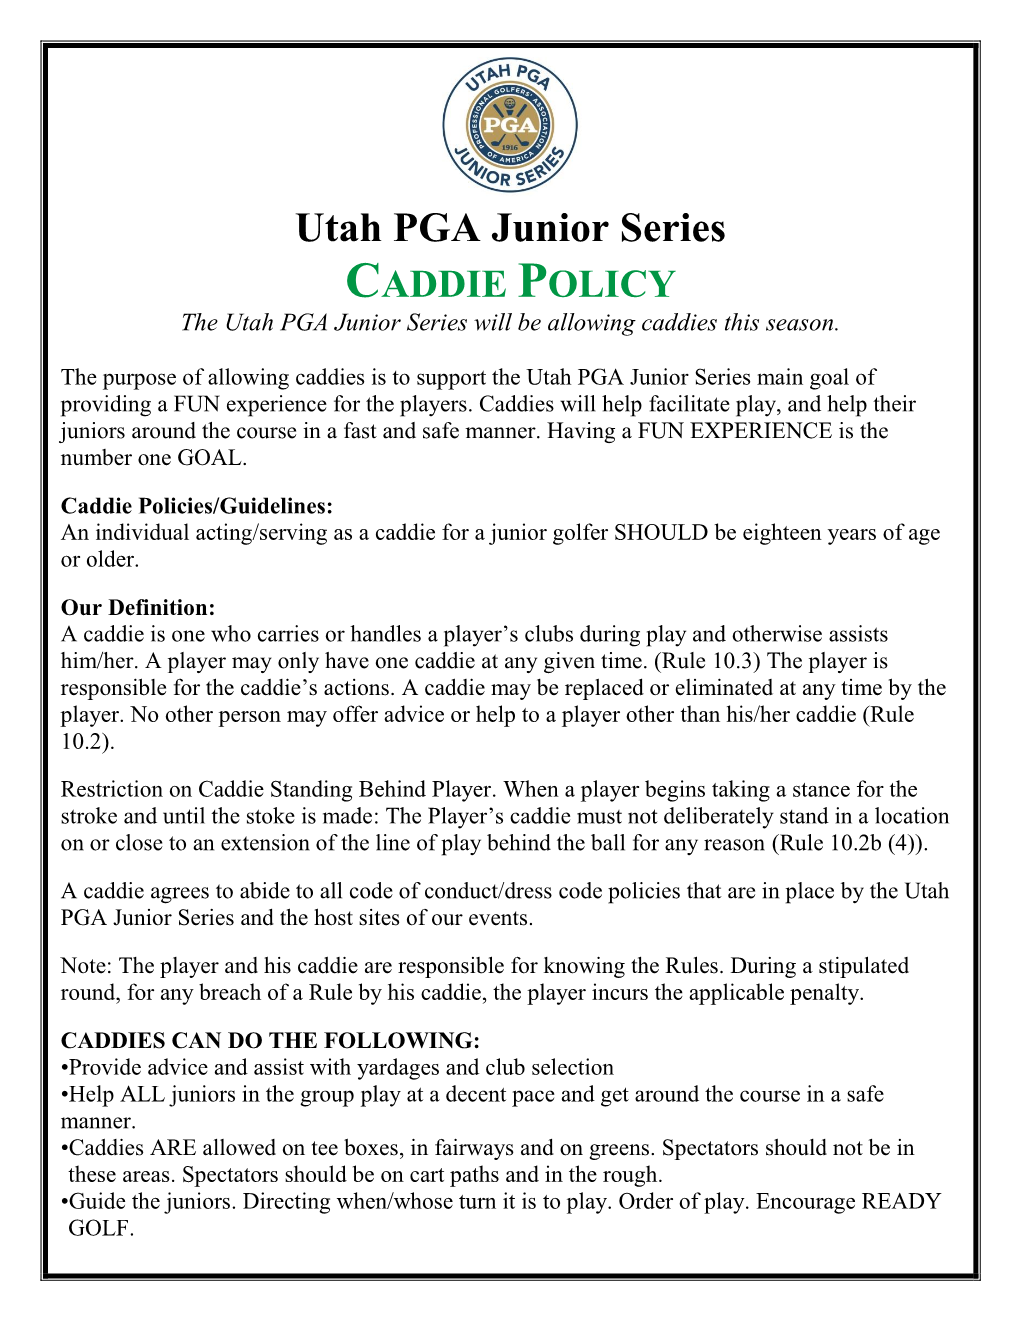 Utah PGA Junior Series CADDIE POLICY the Utah PGA Junior Series Will Be Allowing Caddies This Season